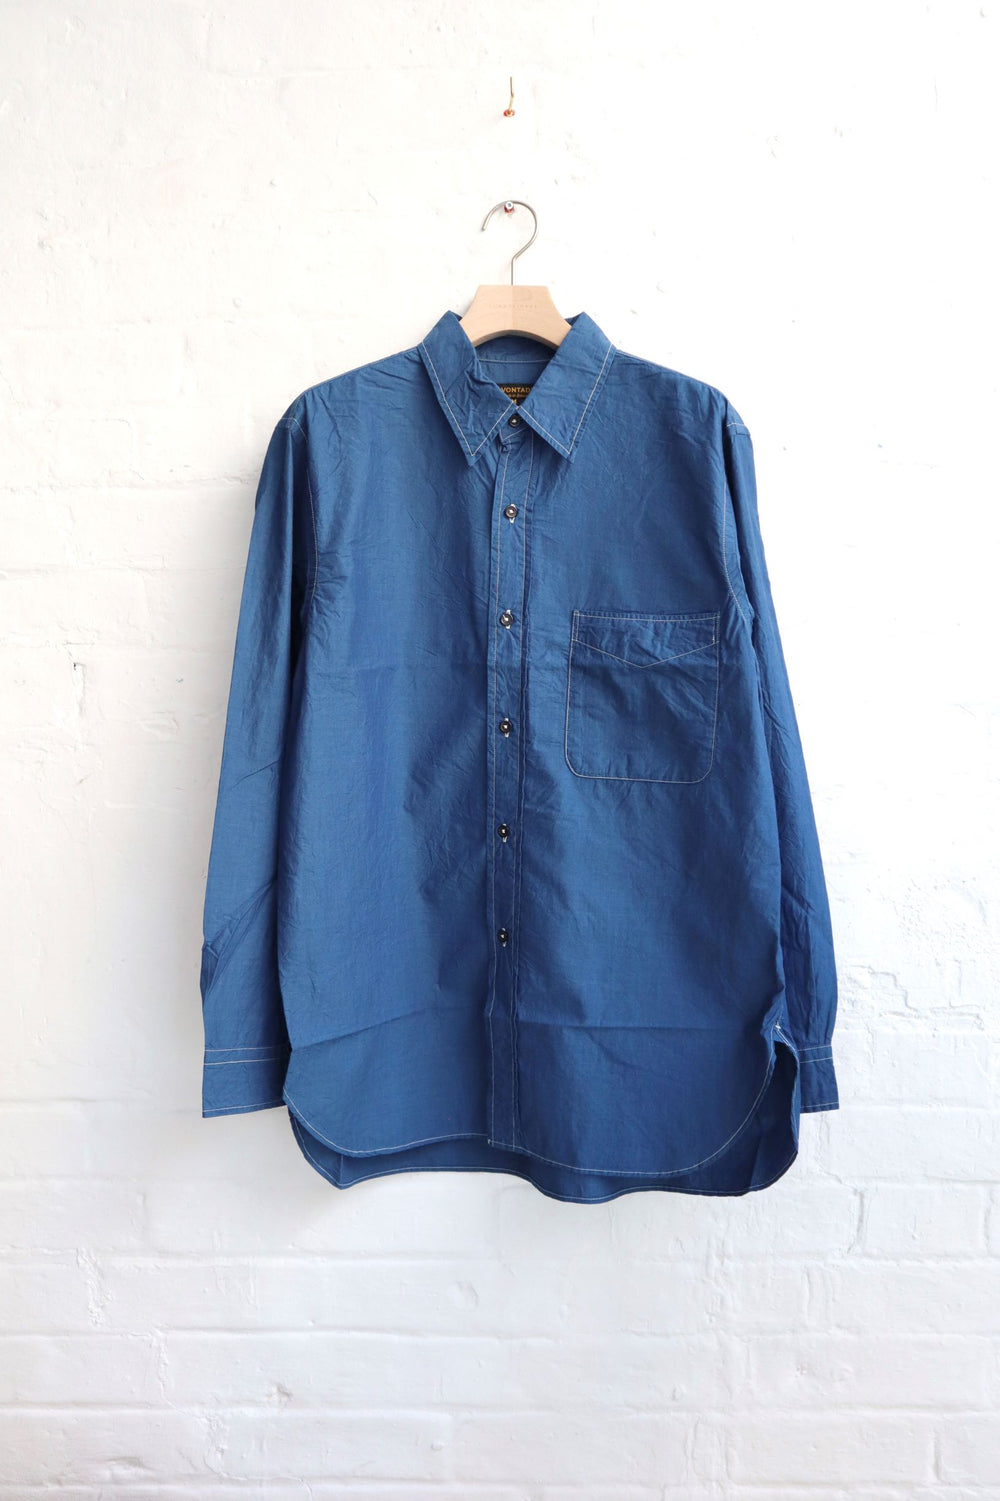 *A Vontade - Lax Regular Shirts, Blue Indigo